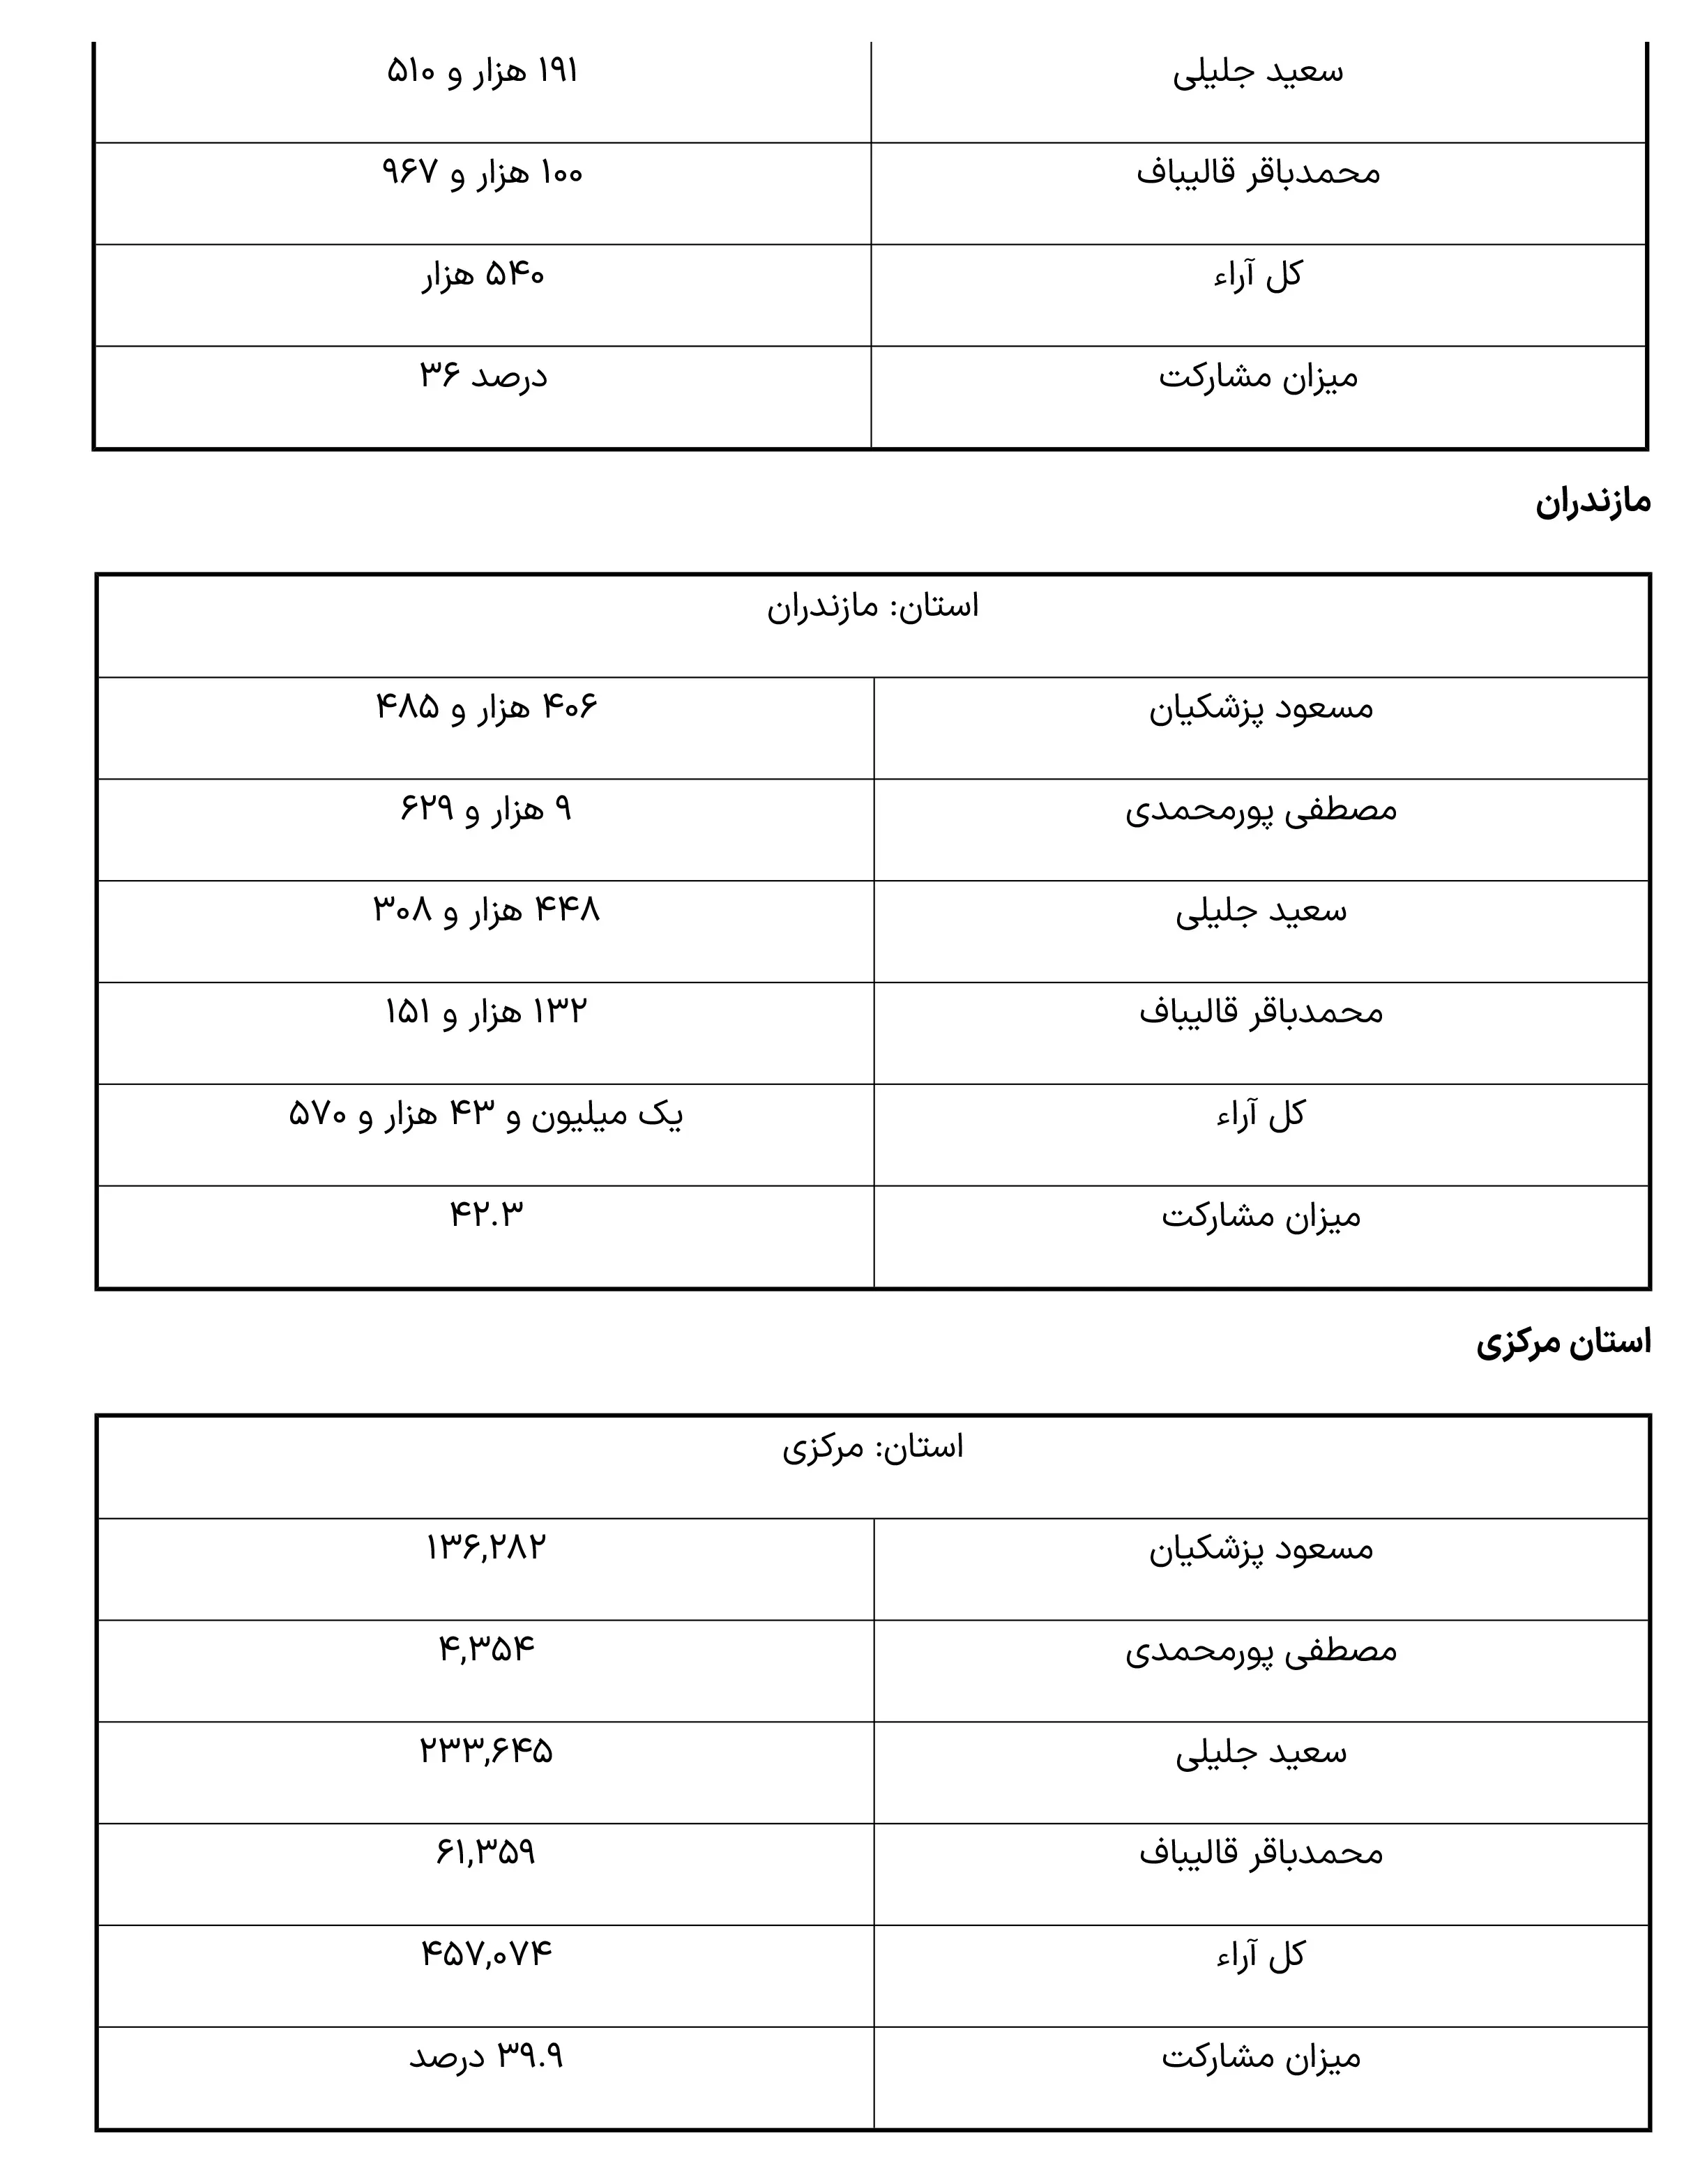 نتایج انتخابات ریاست جمهوری به تفکیک استان ها -12